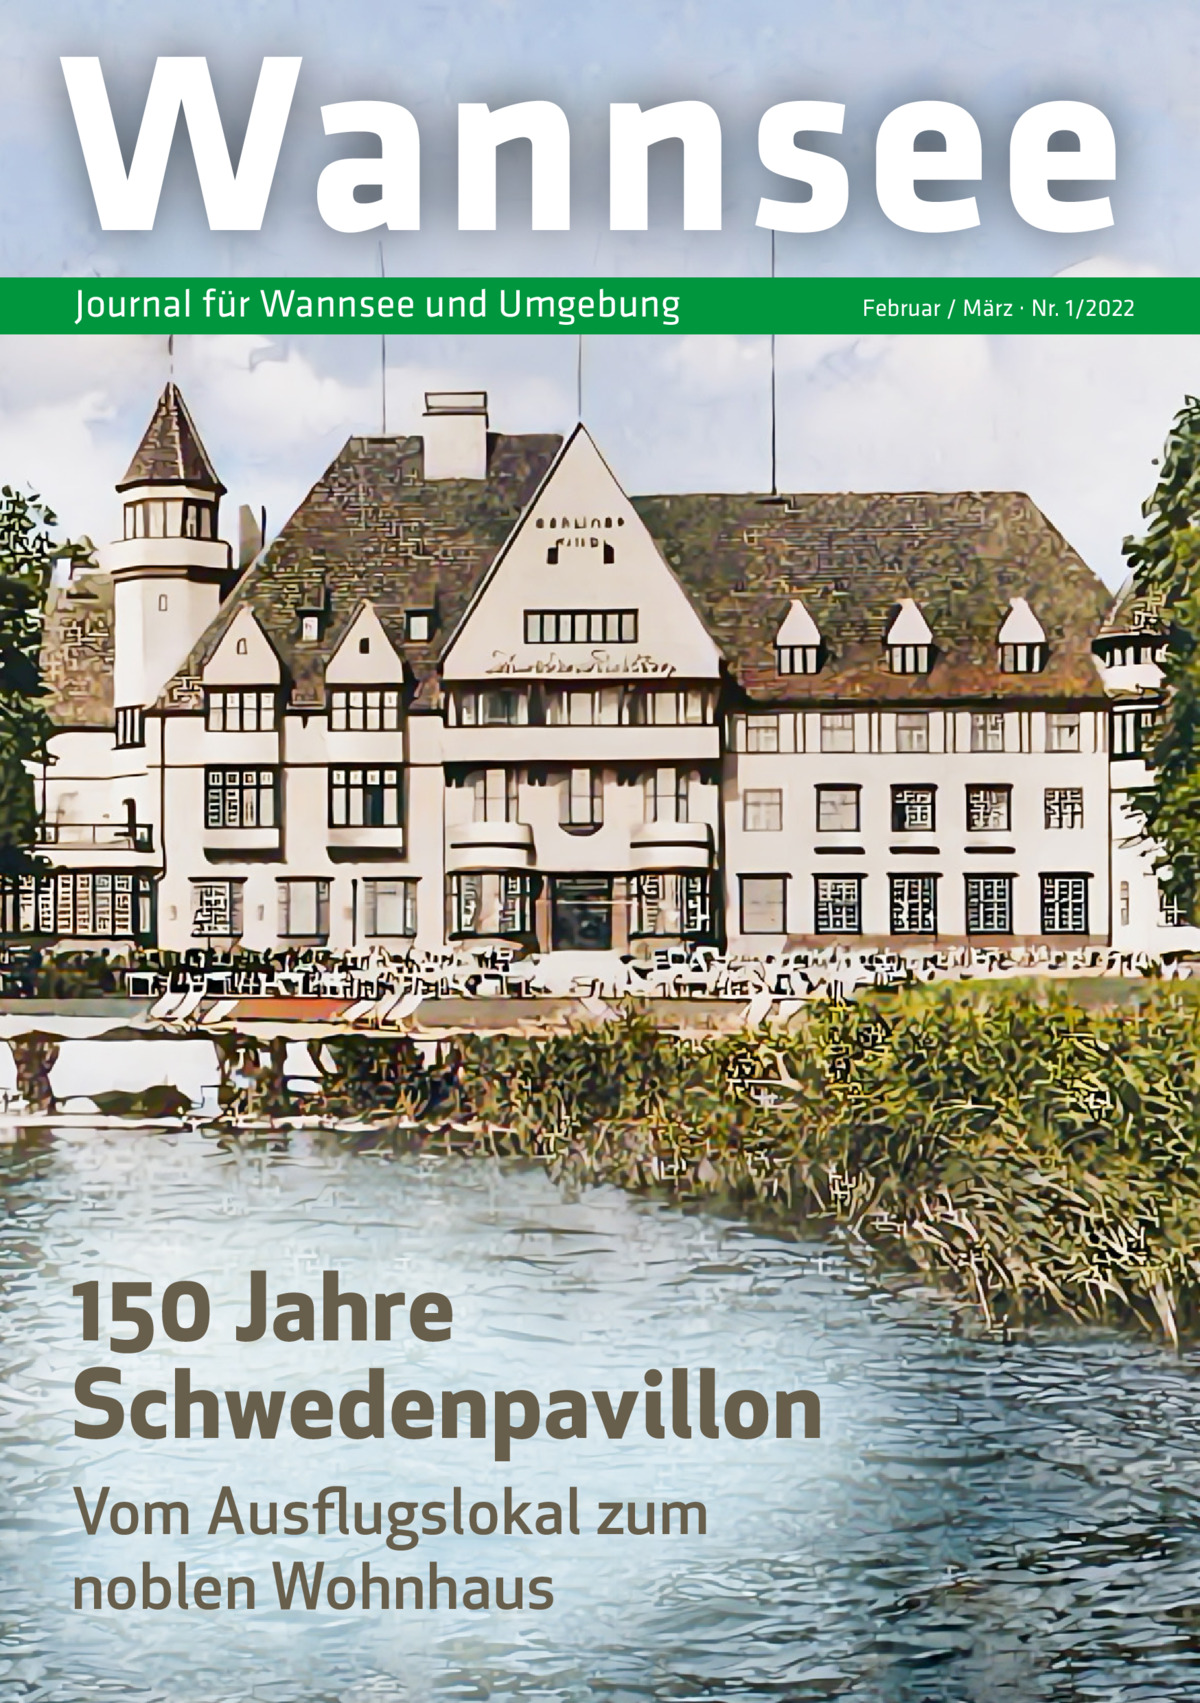 Wannsee Journal für Wannsee und Umgebung  150 Jahre Schwedenpavillon Vom Ausflugslokal zum noblen Wohnhaus  Februar / März · Nr. 1/2022